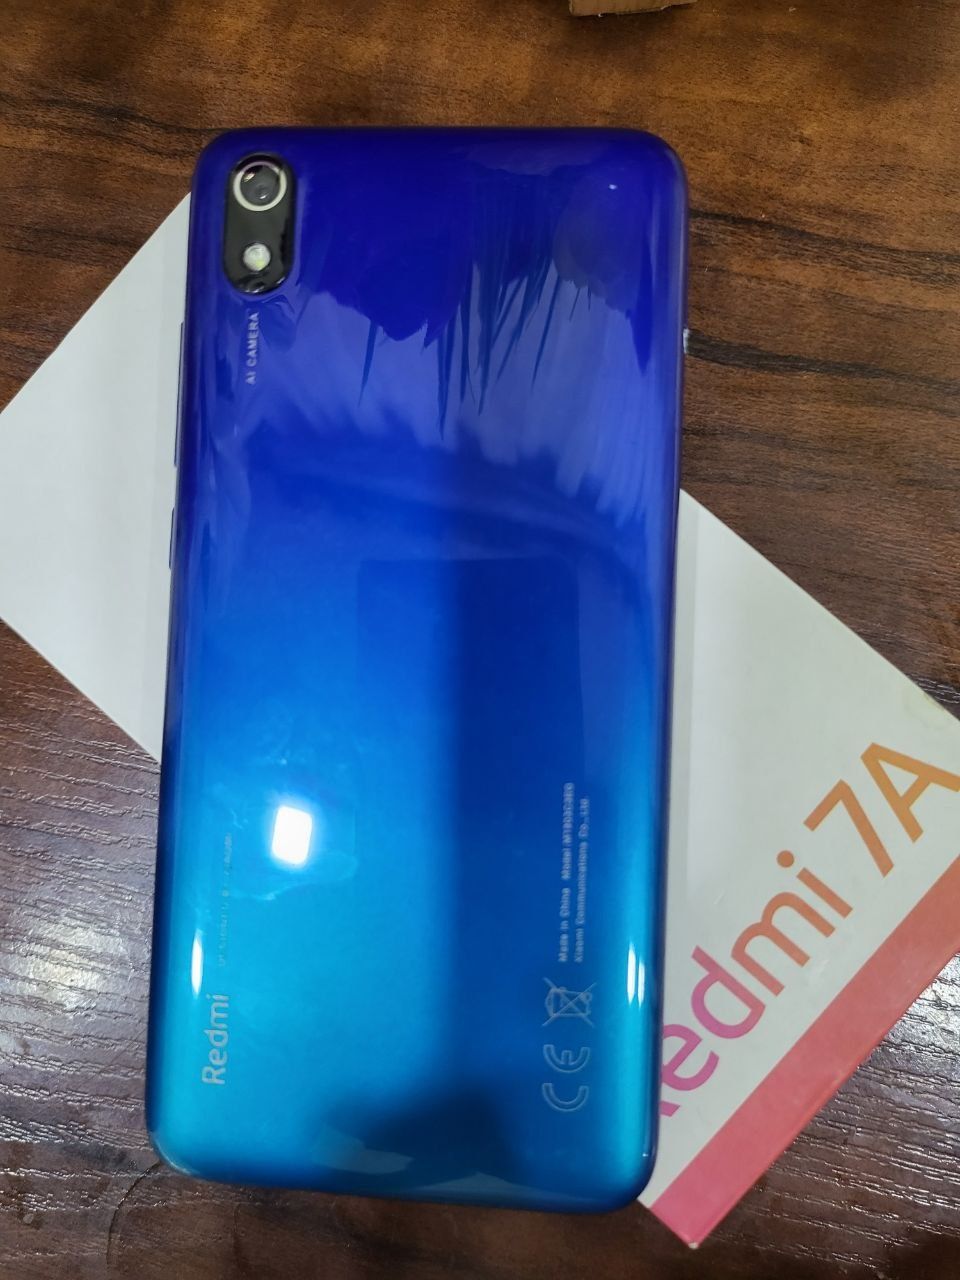 Xiaomi Redmi 7 A